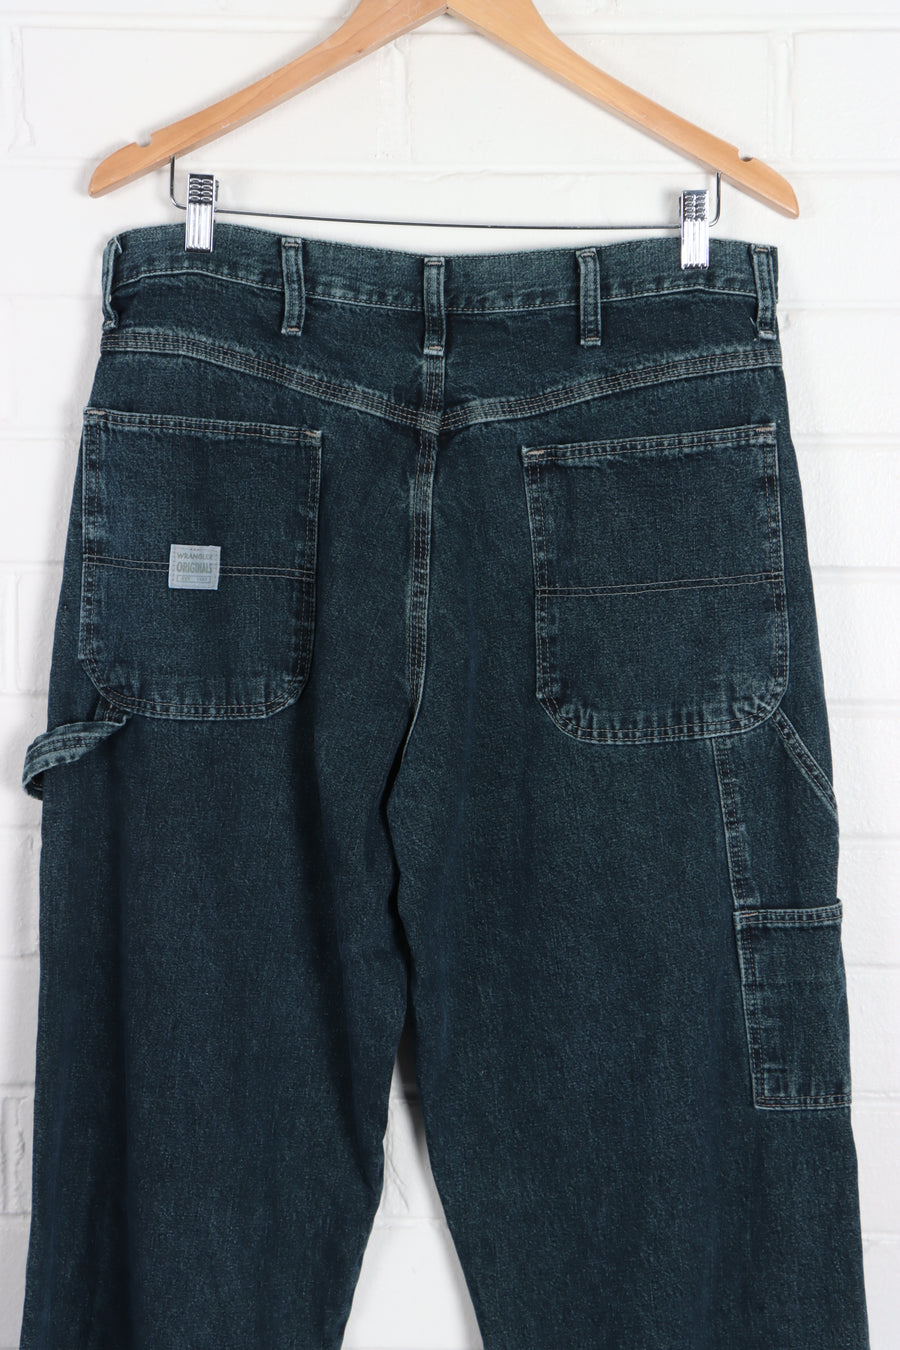 WRANGLER Originals Carpenter Greenish Blue Wash Jeans (34 x 30) - Vintage Sole Melbourne